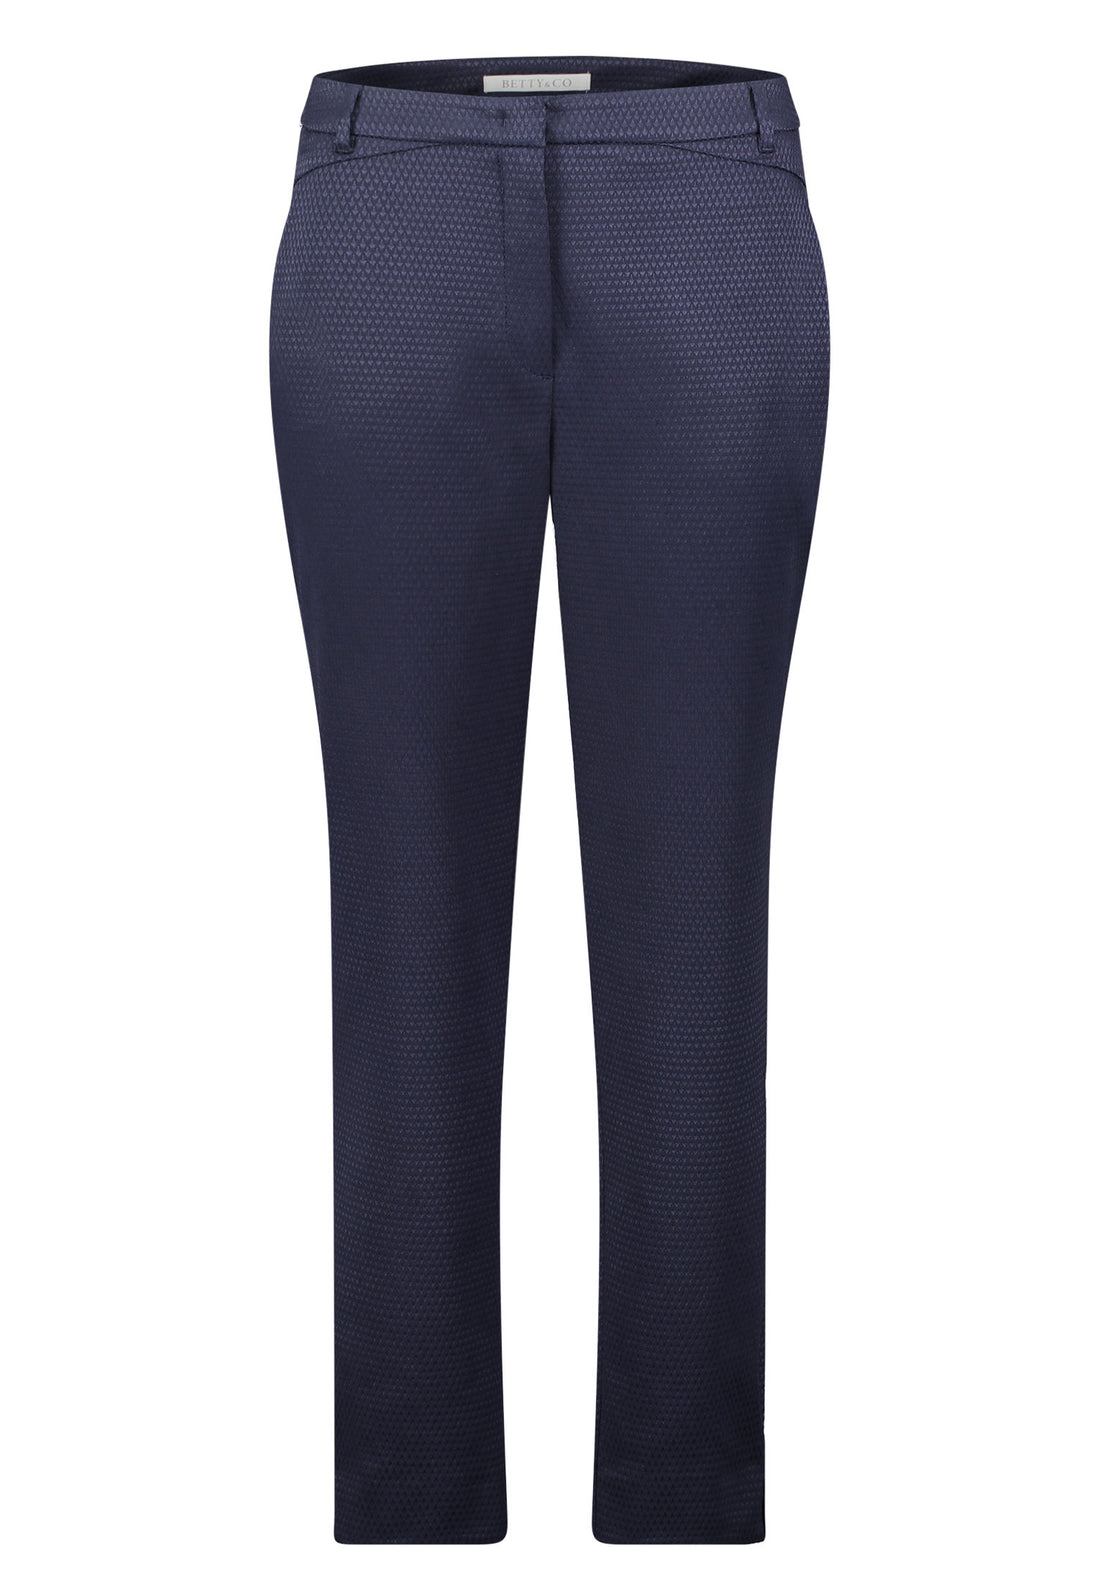 Navy Blue Suit Trousers_6462 3150_8543_01